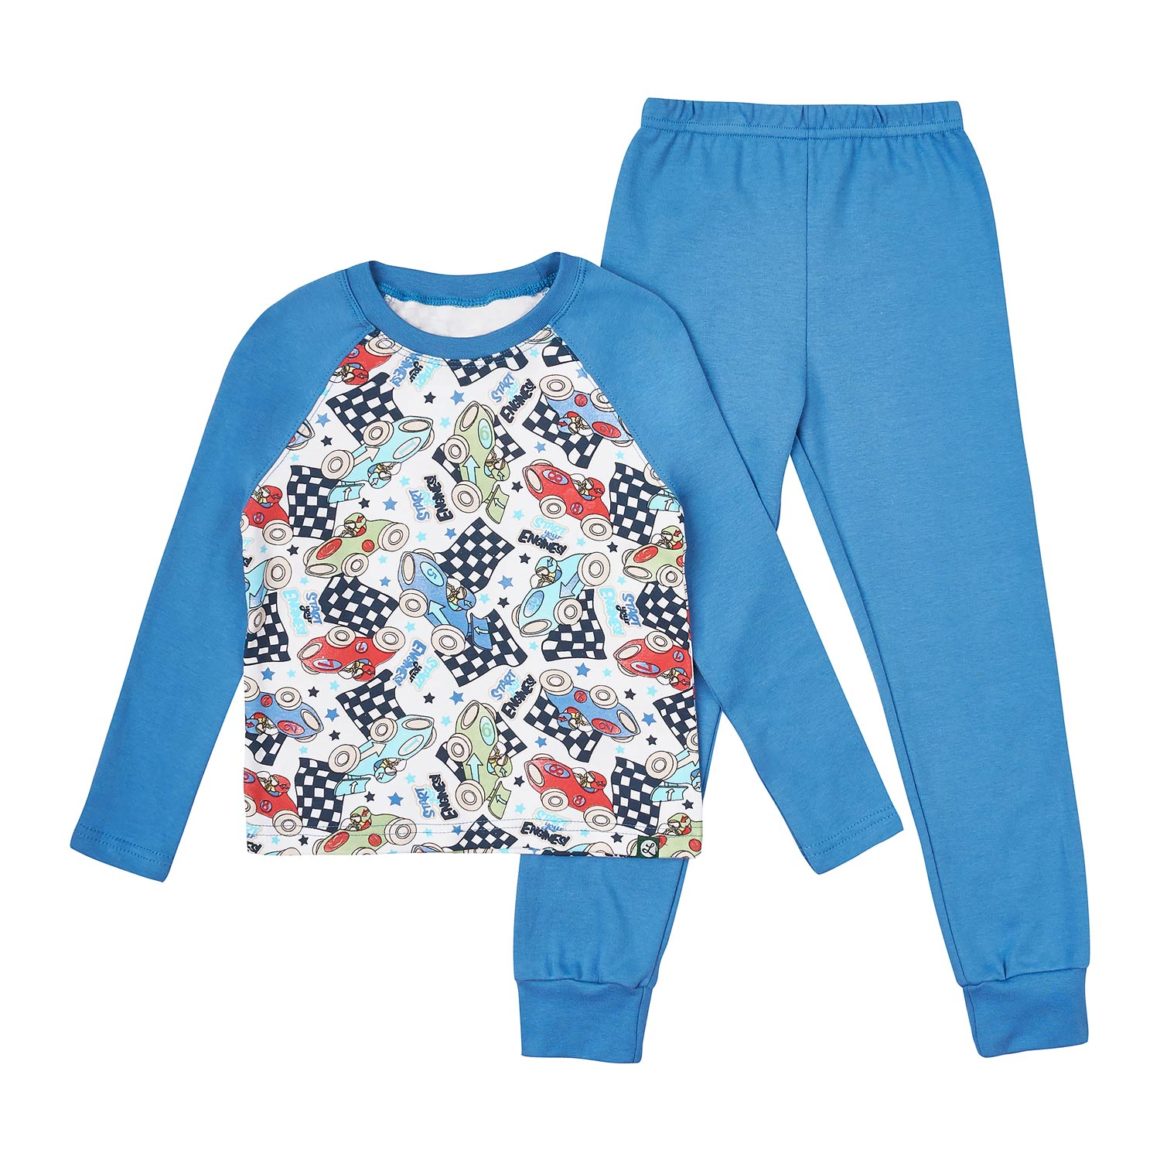 Качественные пижамы для мальчиков от магазина olioli.com.ua